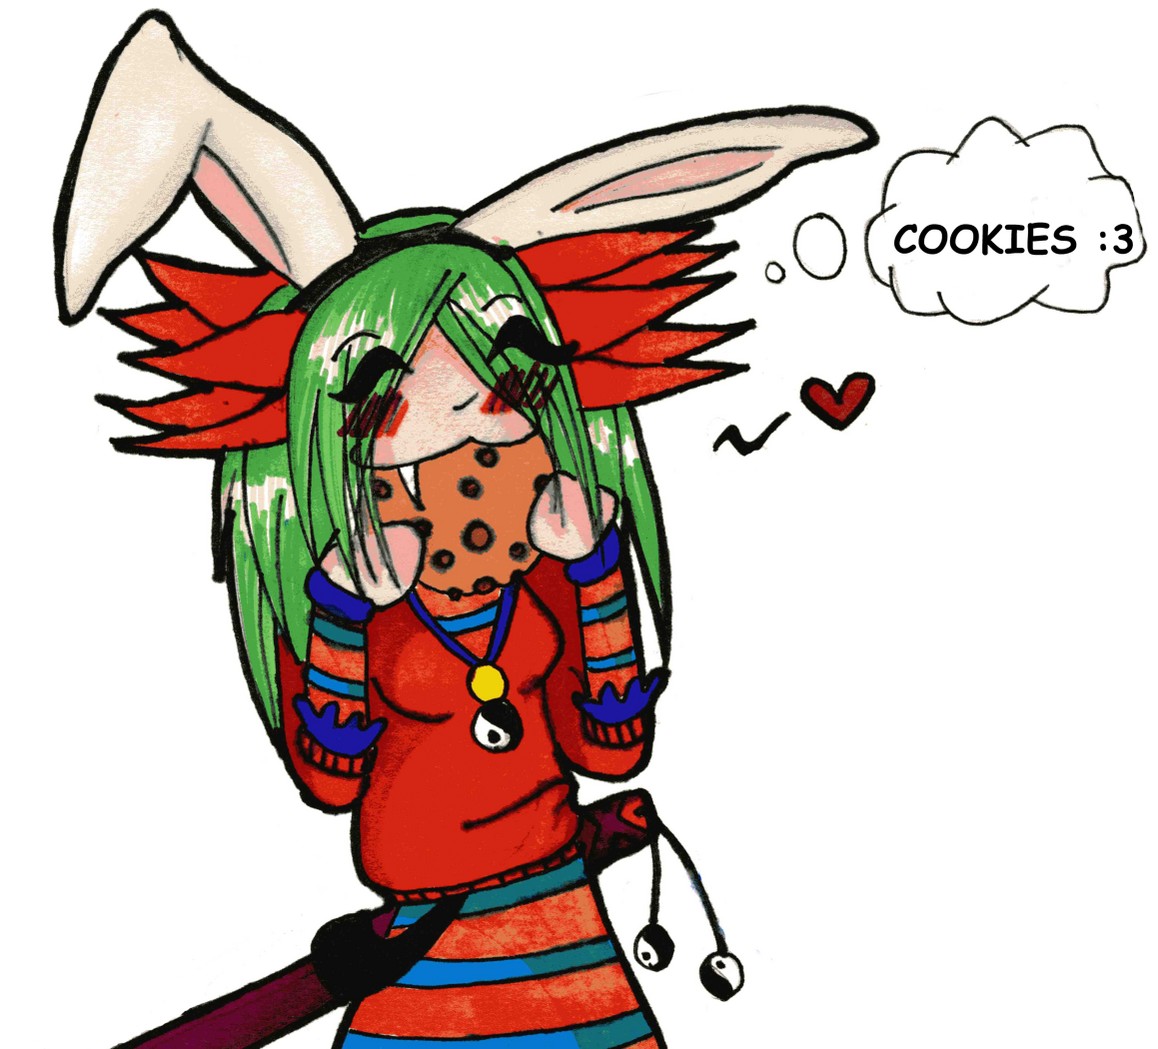 Cookies! by voodoo13